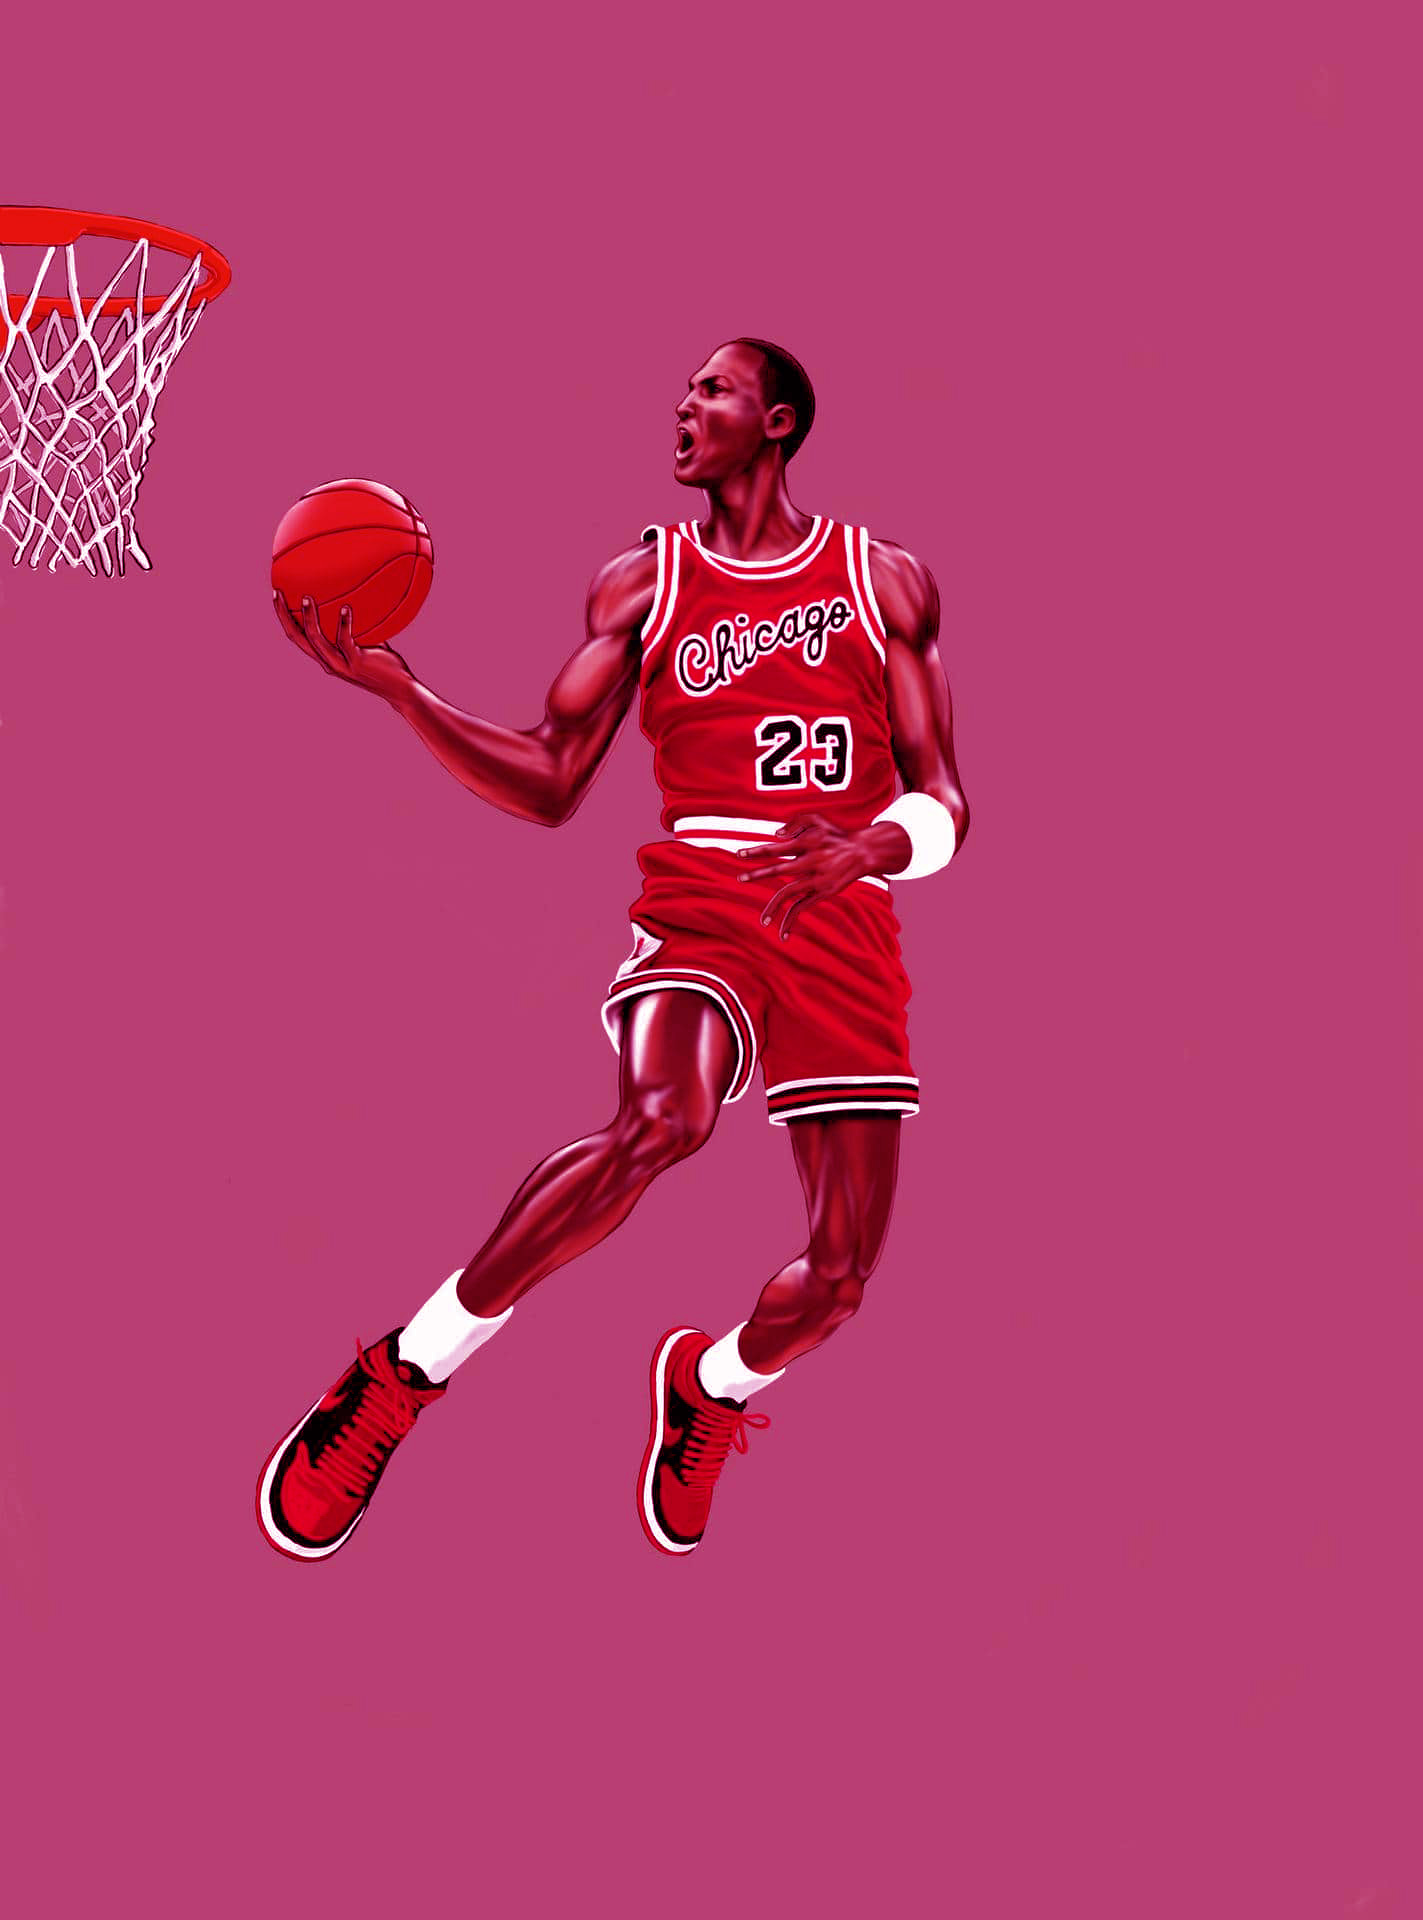 Soldado entregar Asombro Michael Jordan Wallpaper - NawPic